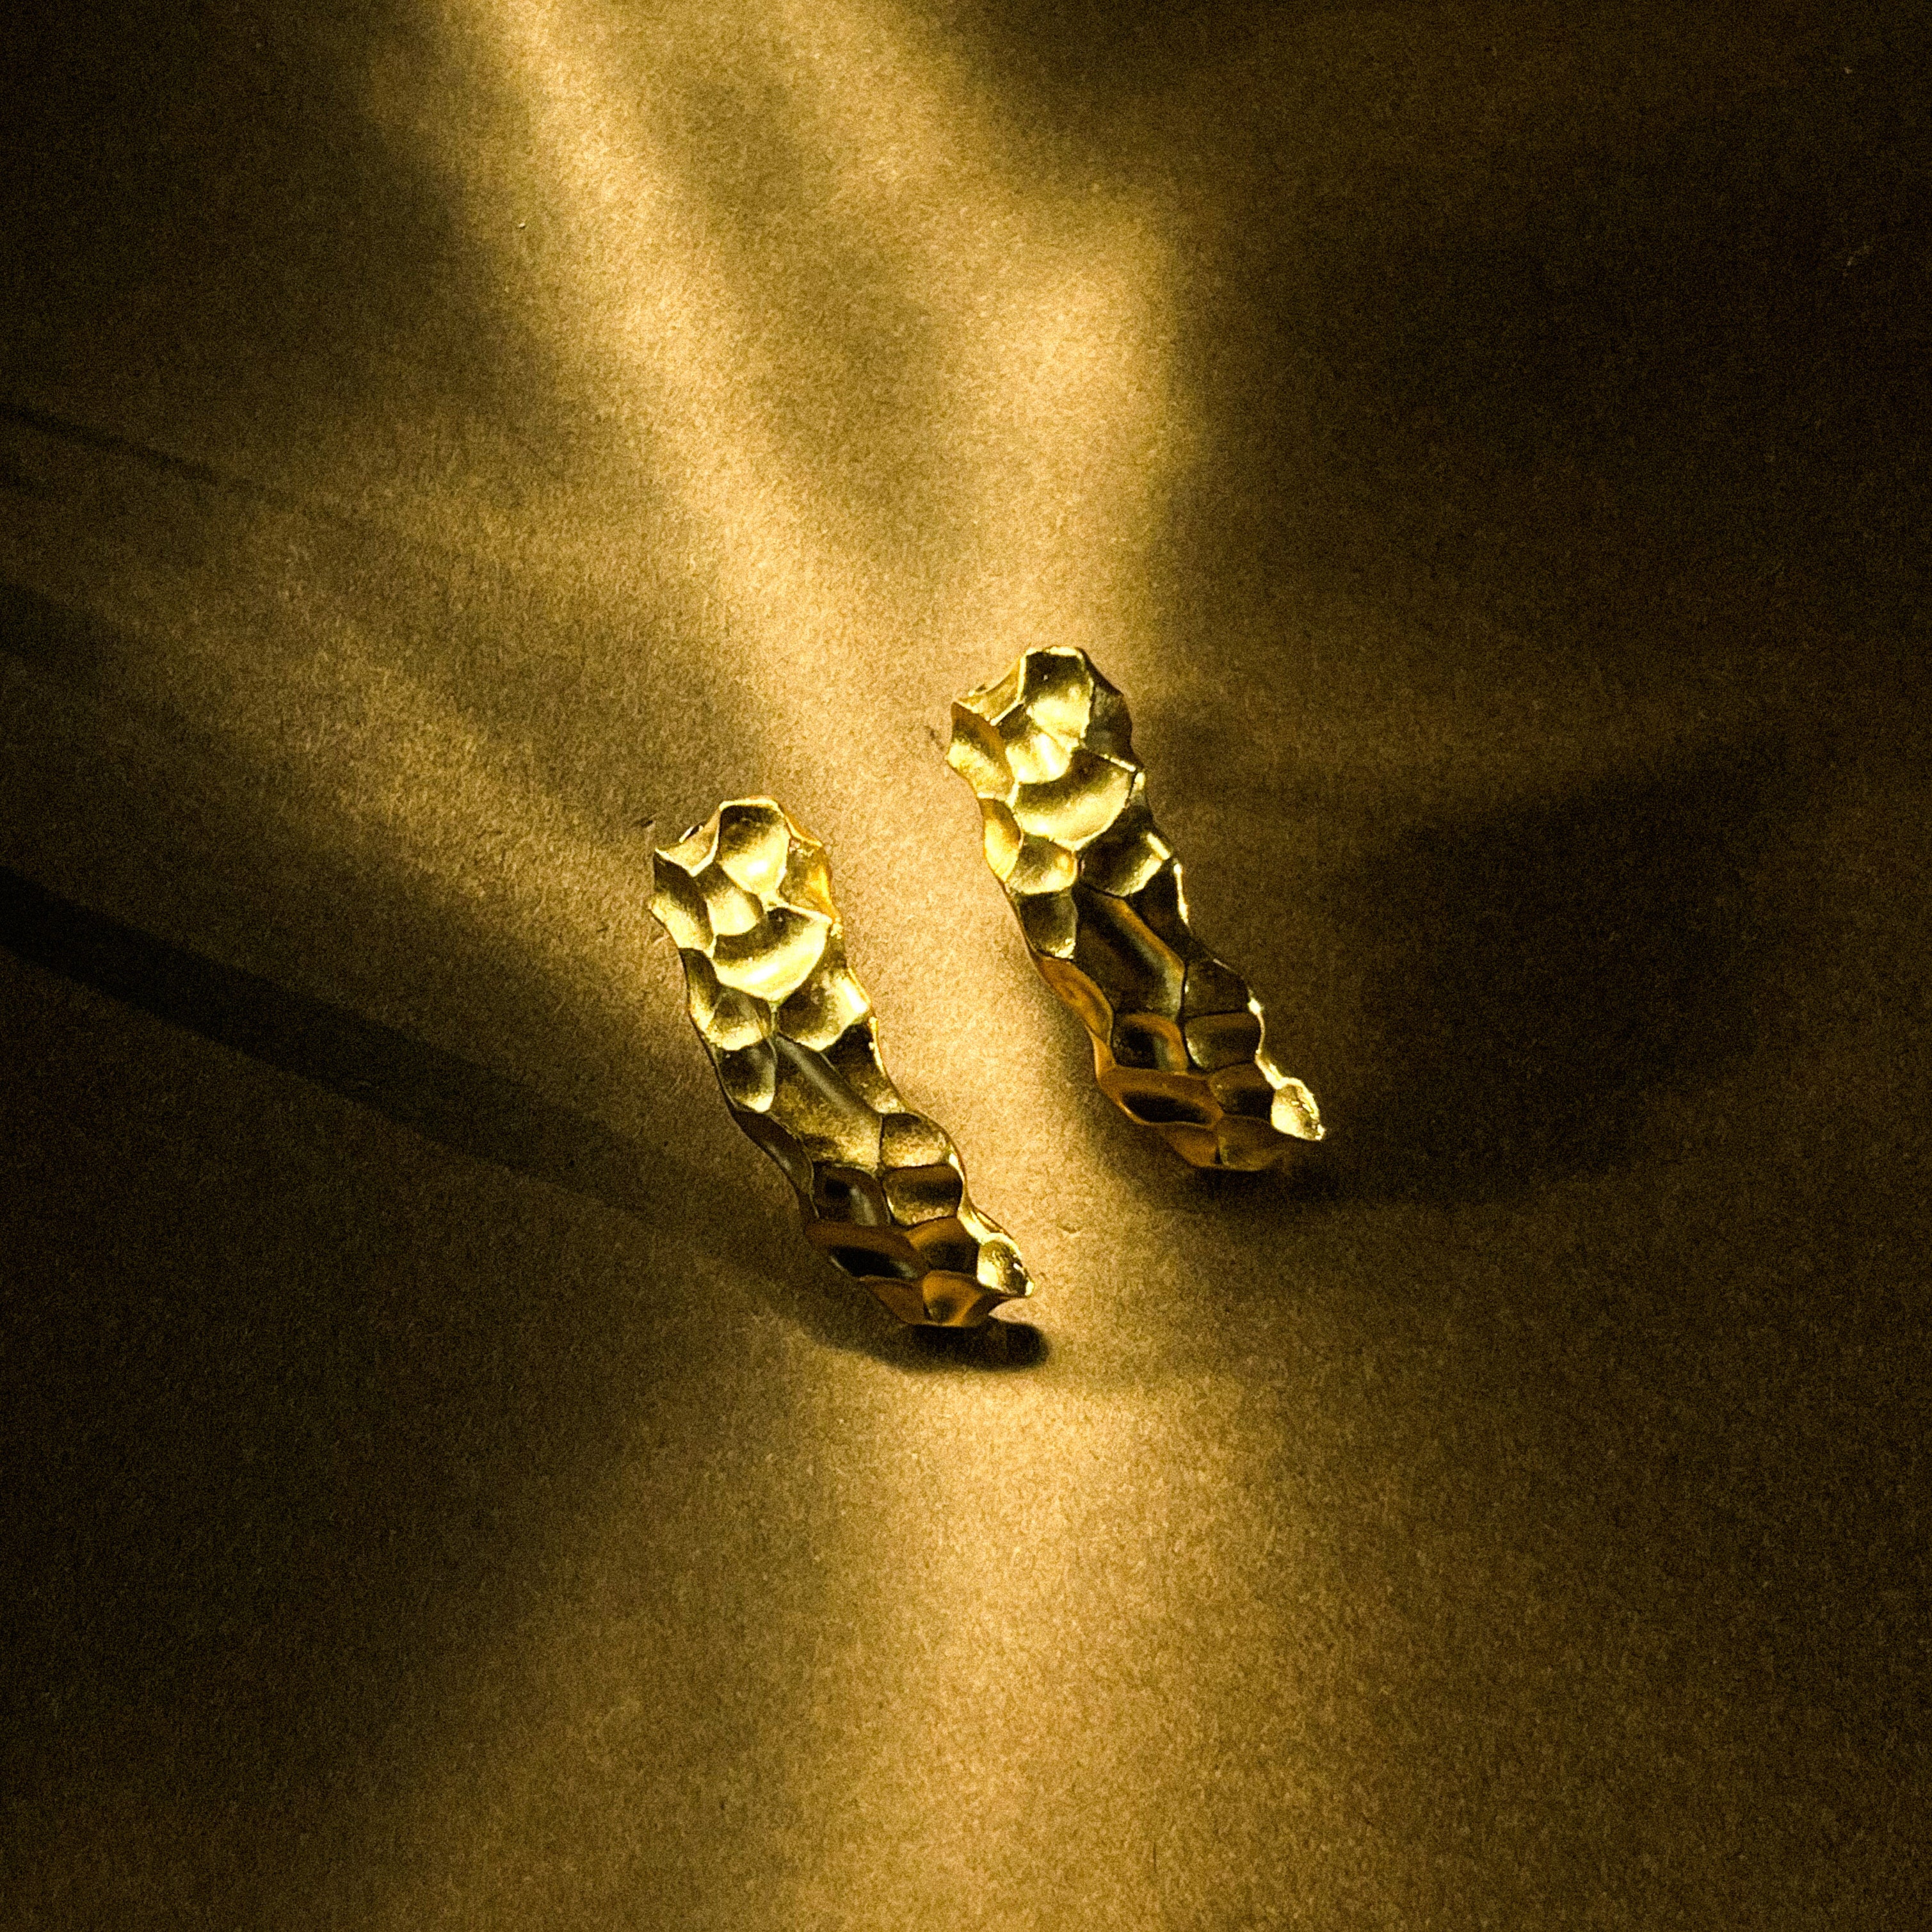 Seedling, gold earrings